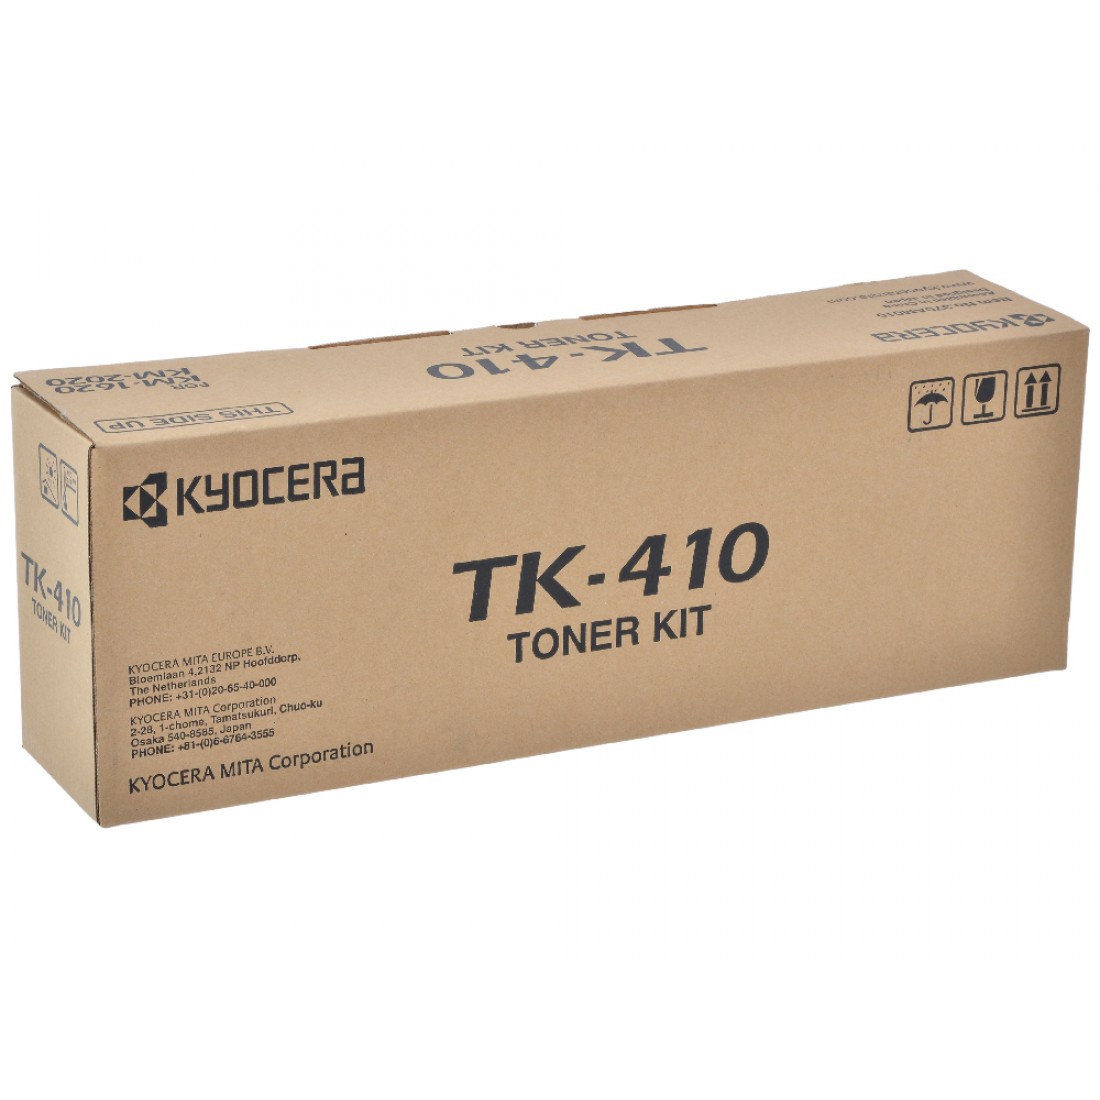 Тонер для принтера kyocera. Тонер-картридж Kyocera tk-410. Tk-435/tk-410. Картридж Kyocera "tk-410". Tk-410/370am010.